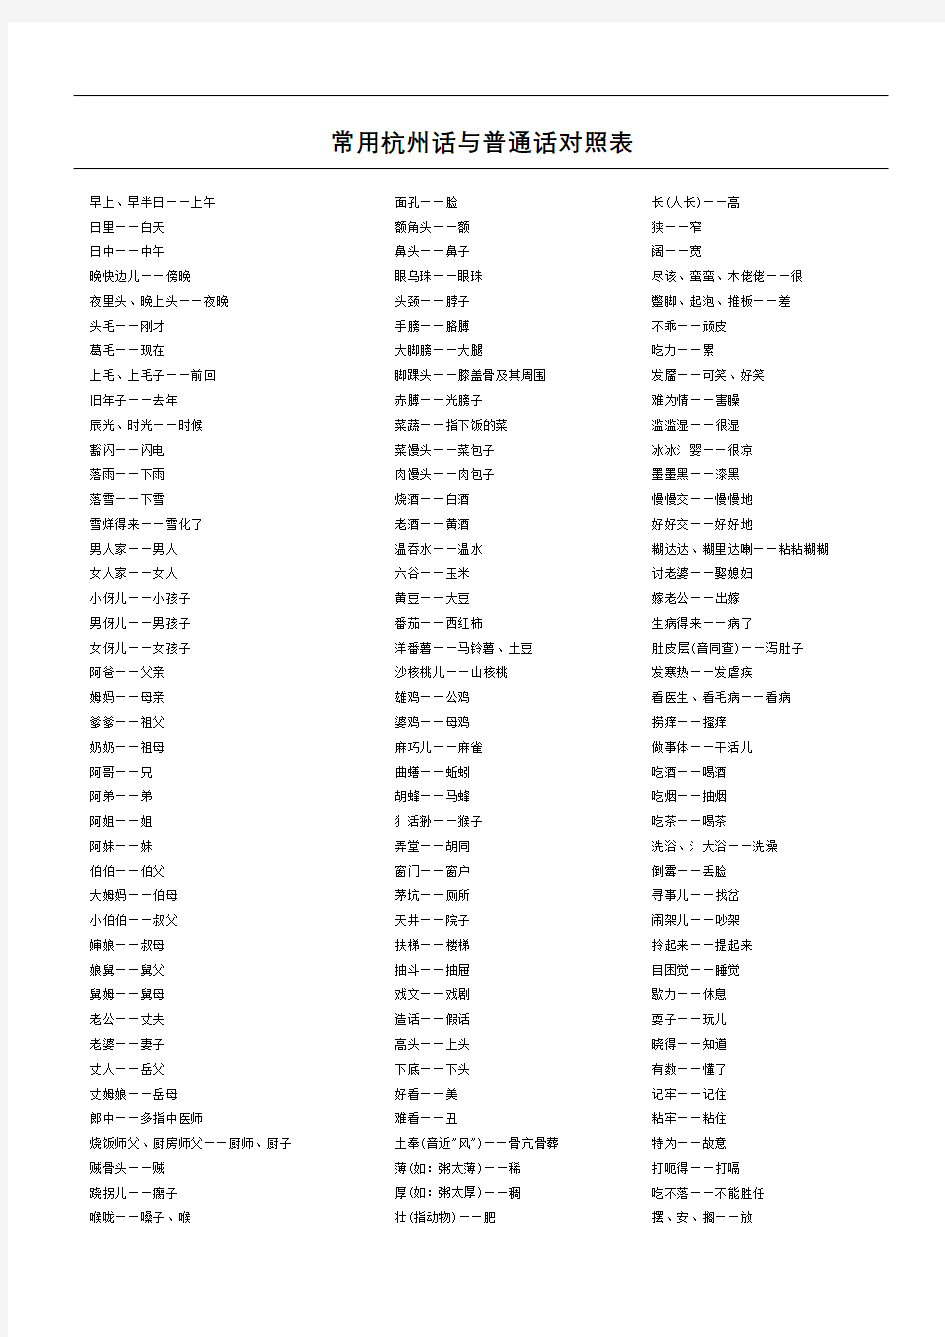 常用杭州话与普通话对照表